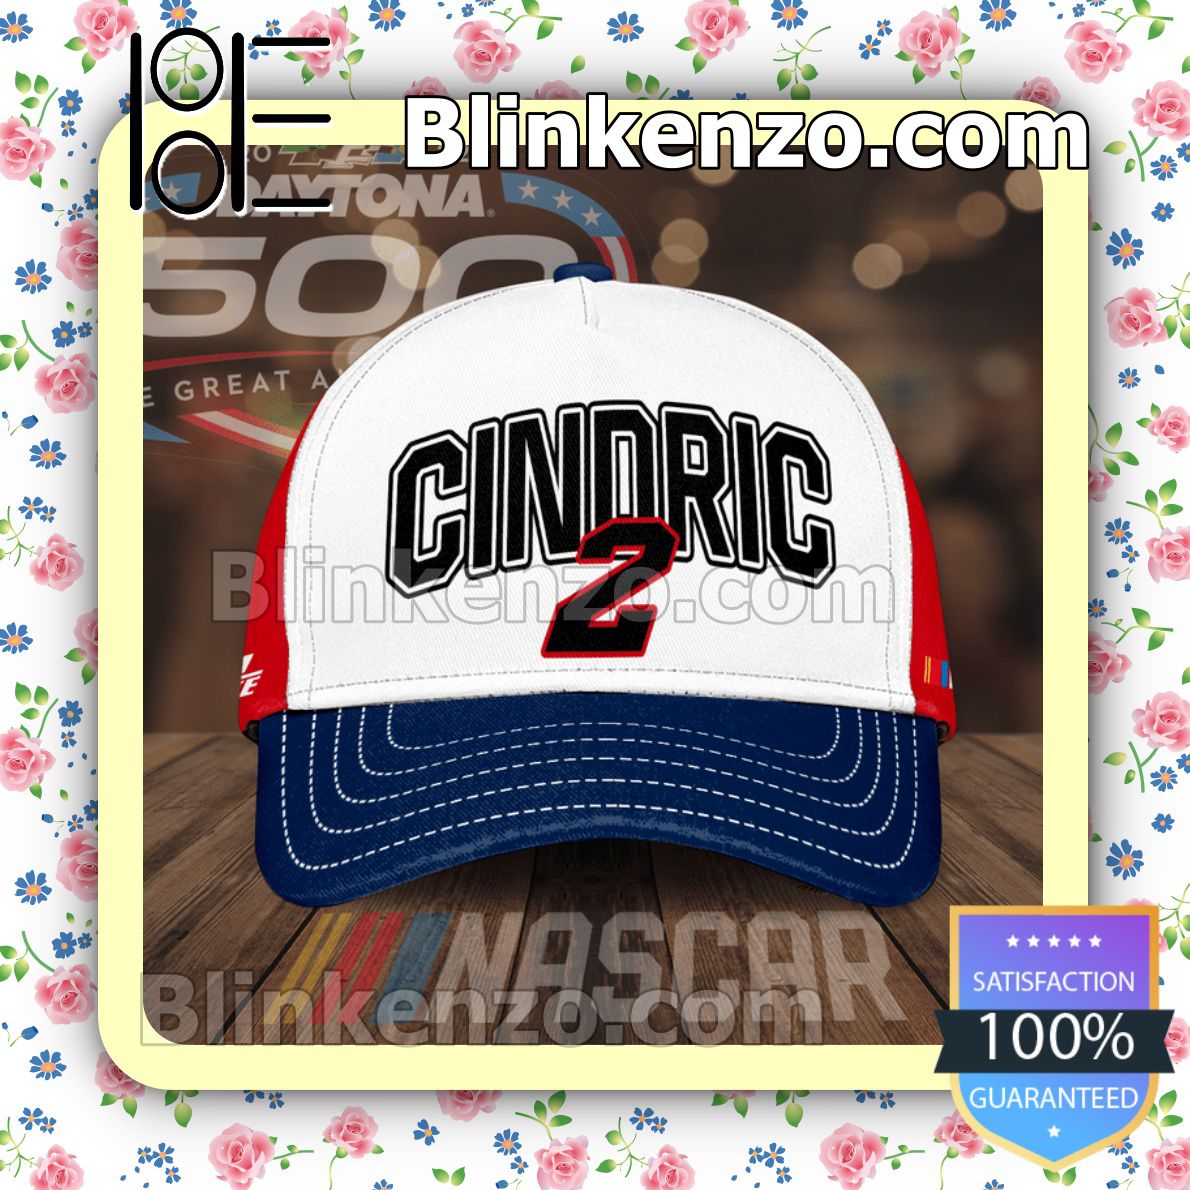 Nascar Daytona 500 Cindric 2 Team Penske Baseball Caps Gift For Boyfriend